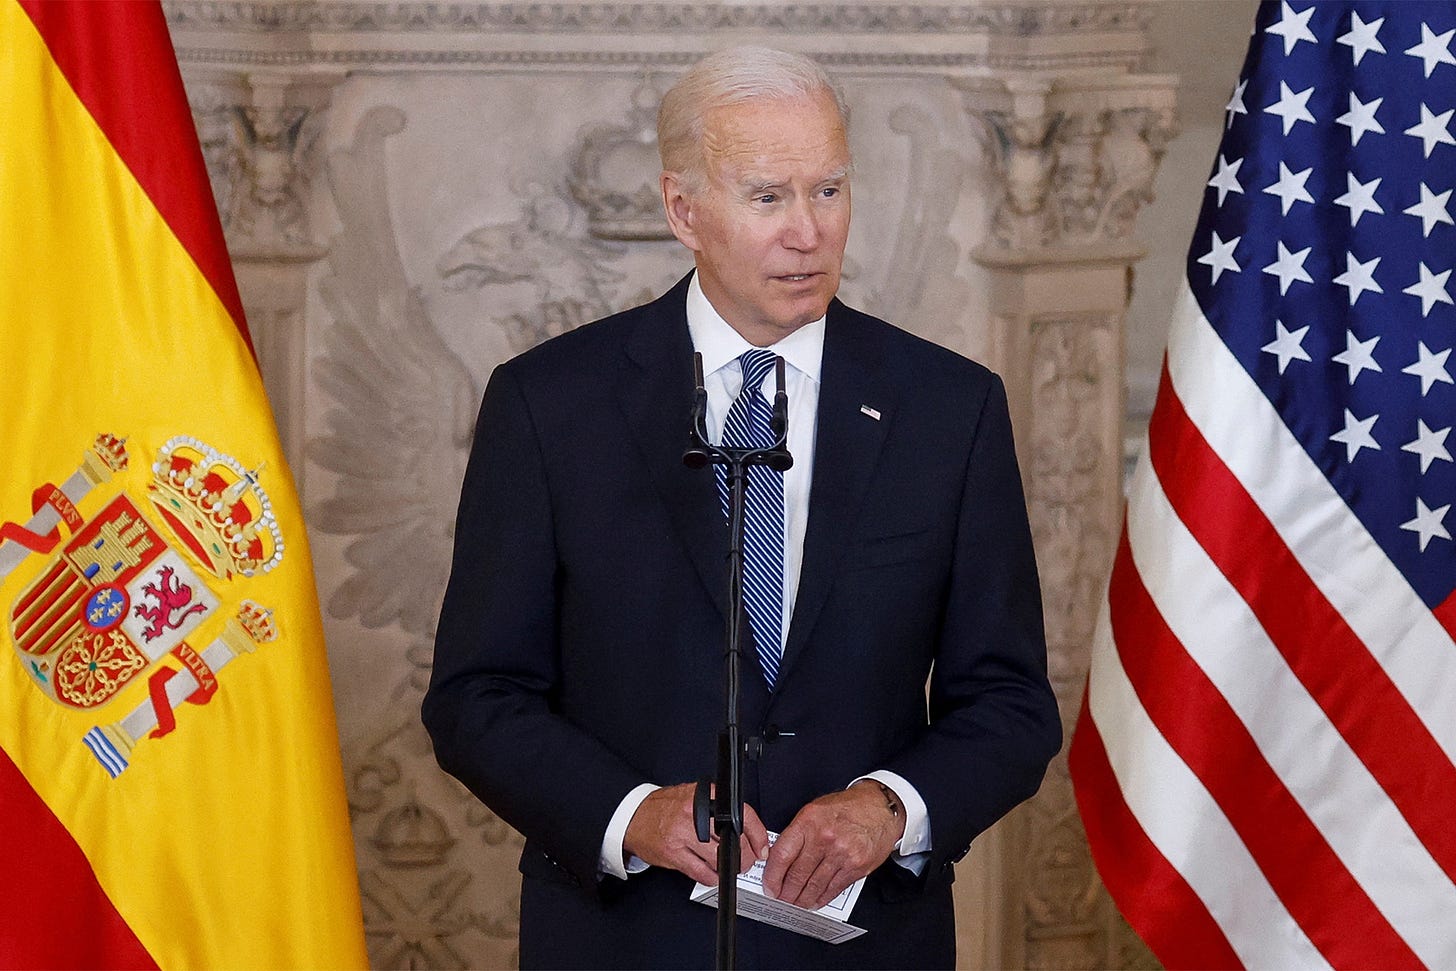 Biden jokes he may not return from Spain as approval ratings dip